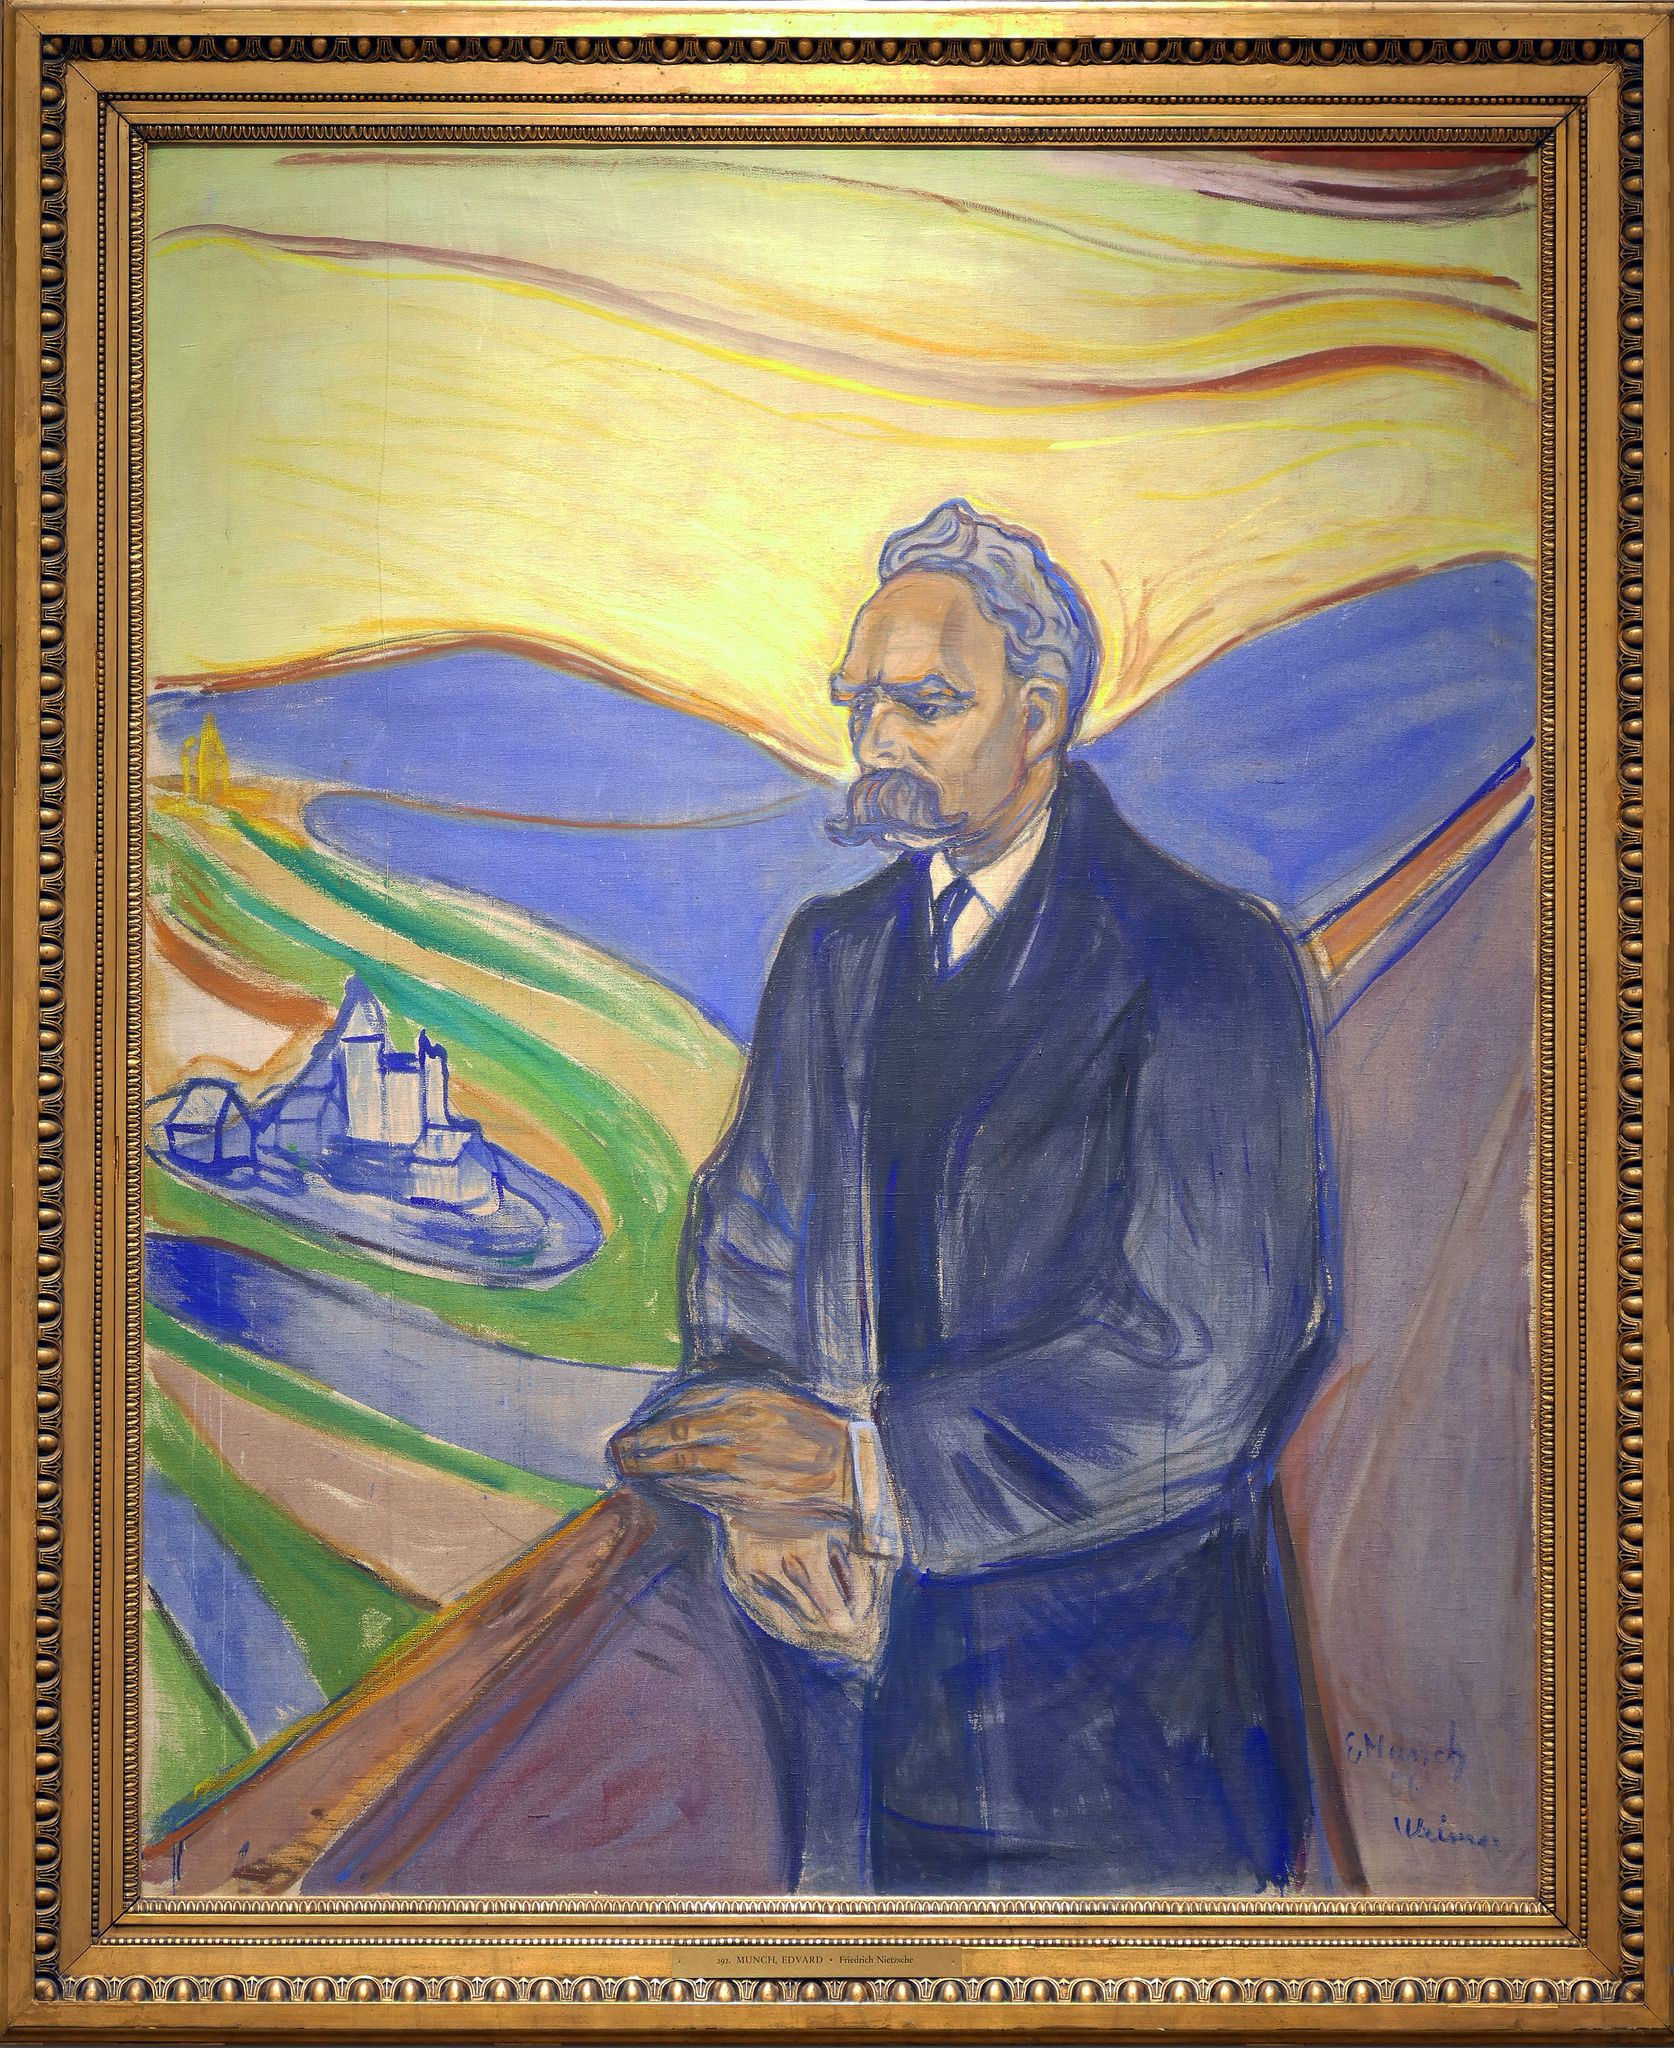 Portret van Friedrich Nietzsche geschilderd door Edvard Munch in 1906, deze bekende expressionistische schilder werd vooral bekend door zijn beroemde schilderij 'De Schreeuw